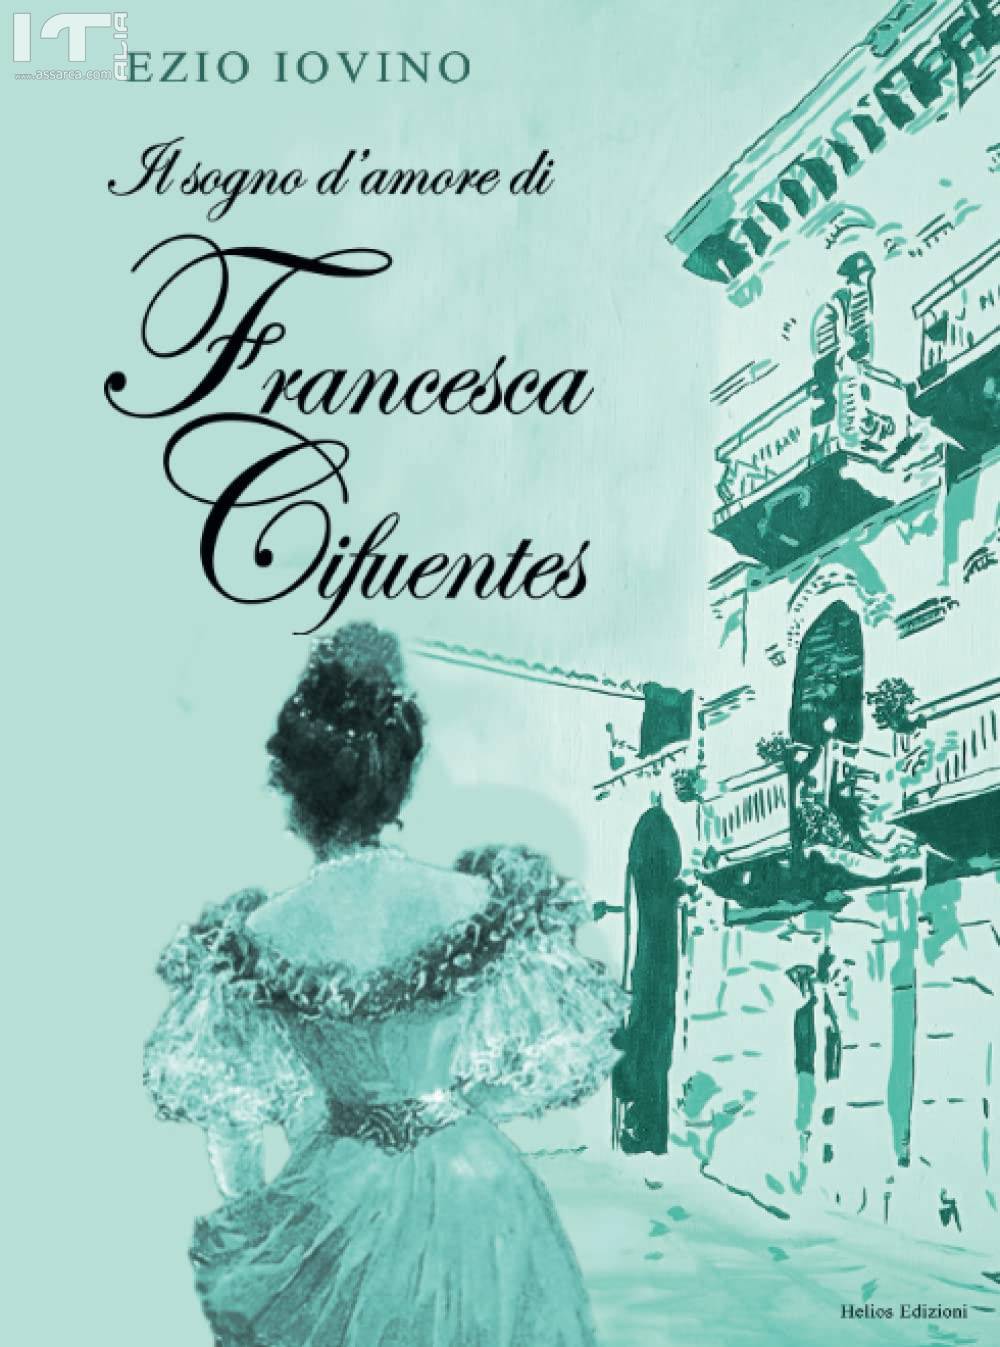 Il sogno d`amore di Francesca Cifuentes, in vendita il nuovo romanzo di Ezio Iovino